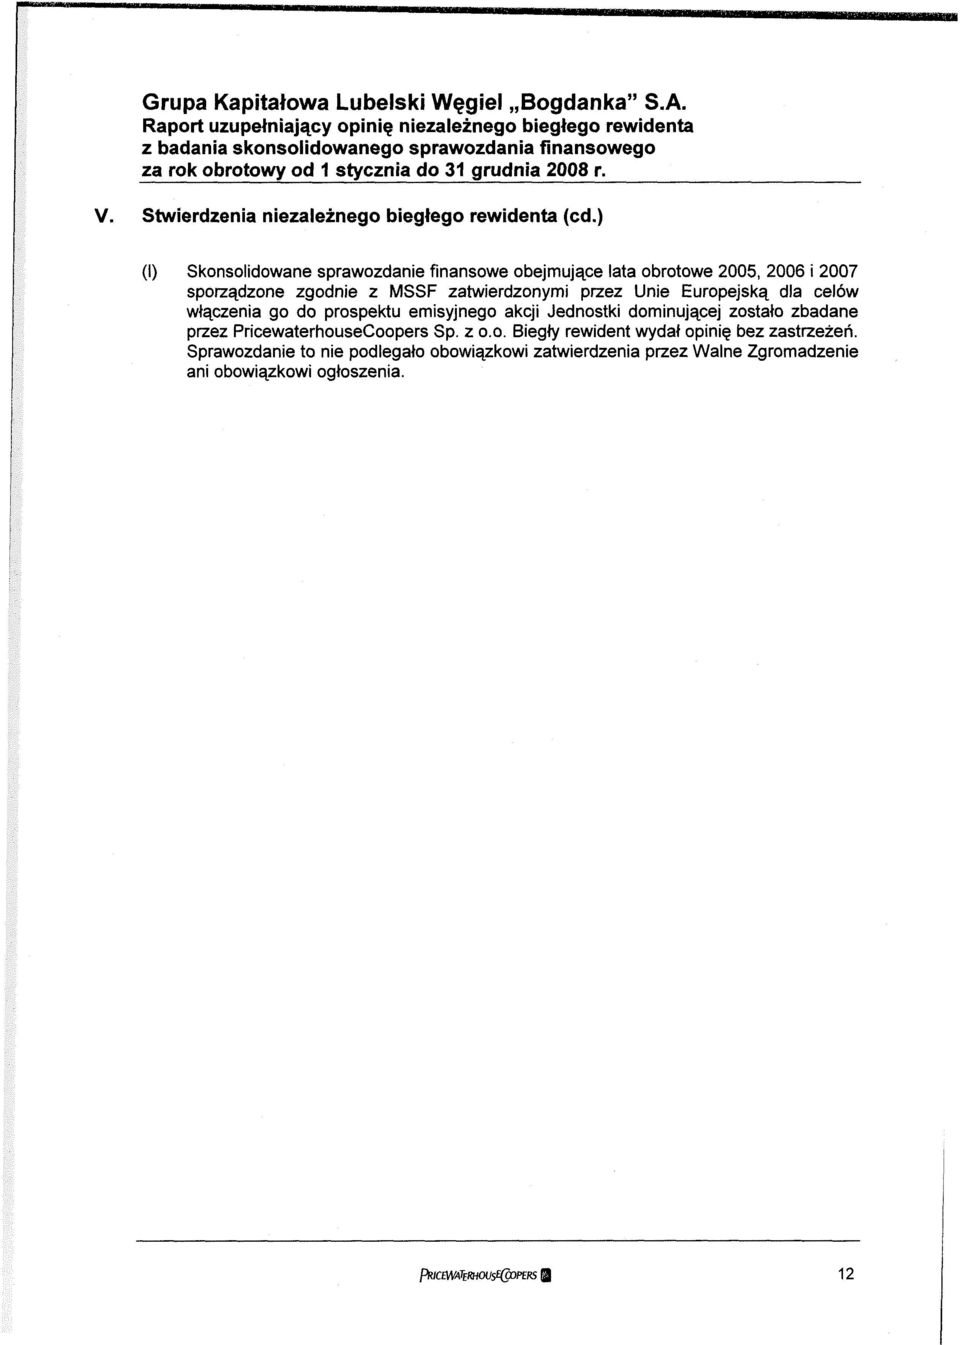 ) (l) Skonsolidowane sprawozdanie finansowe obejmujące lata obrotowe 2005, 2006 i 2007 sporządzone zgodnie z MSSF zatwierdzonymi przez Unie Europejską dla celów